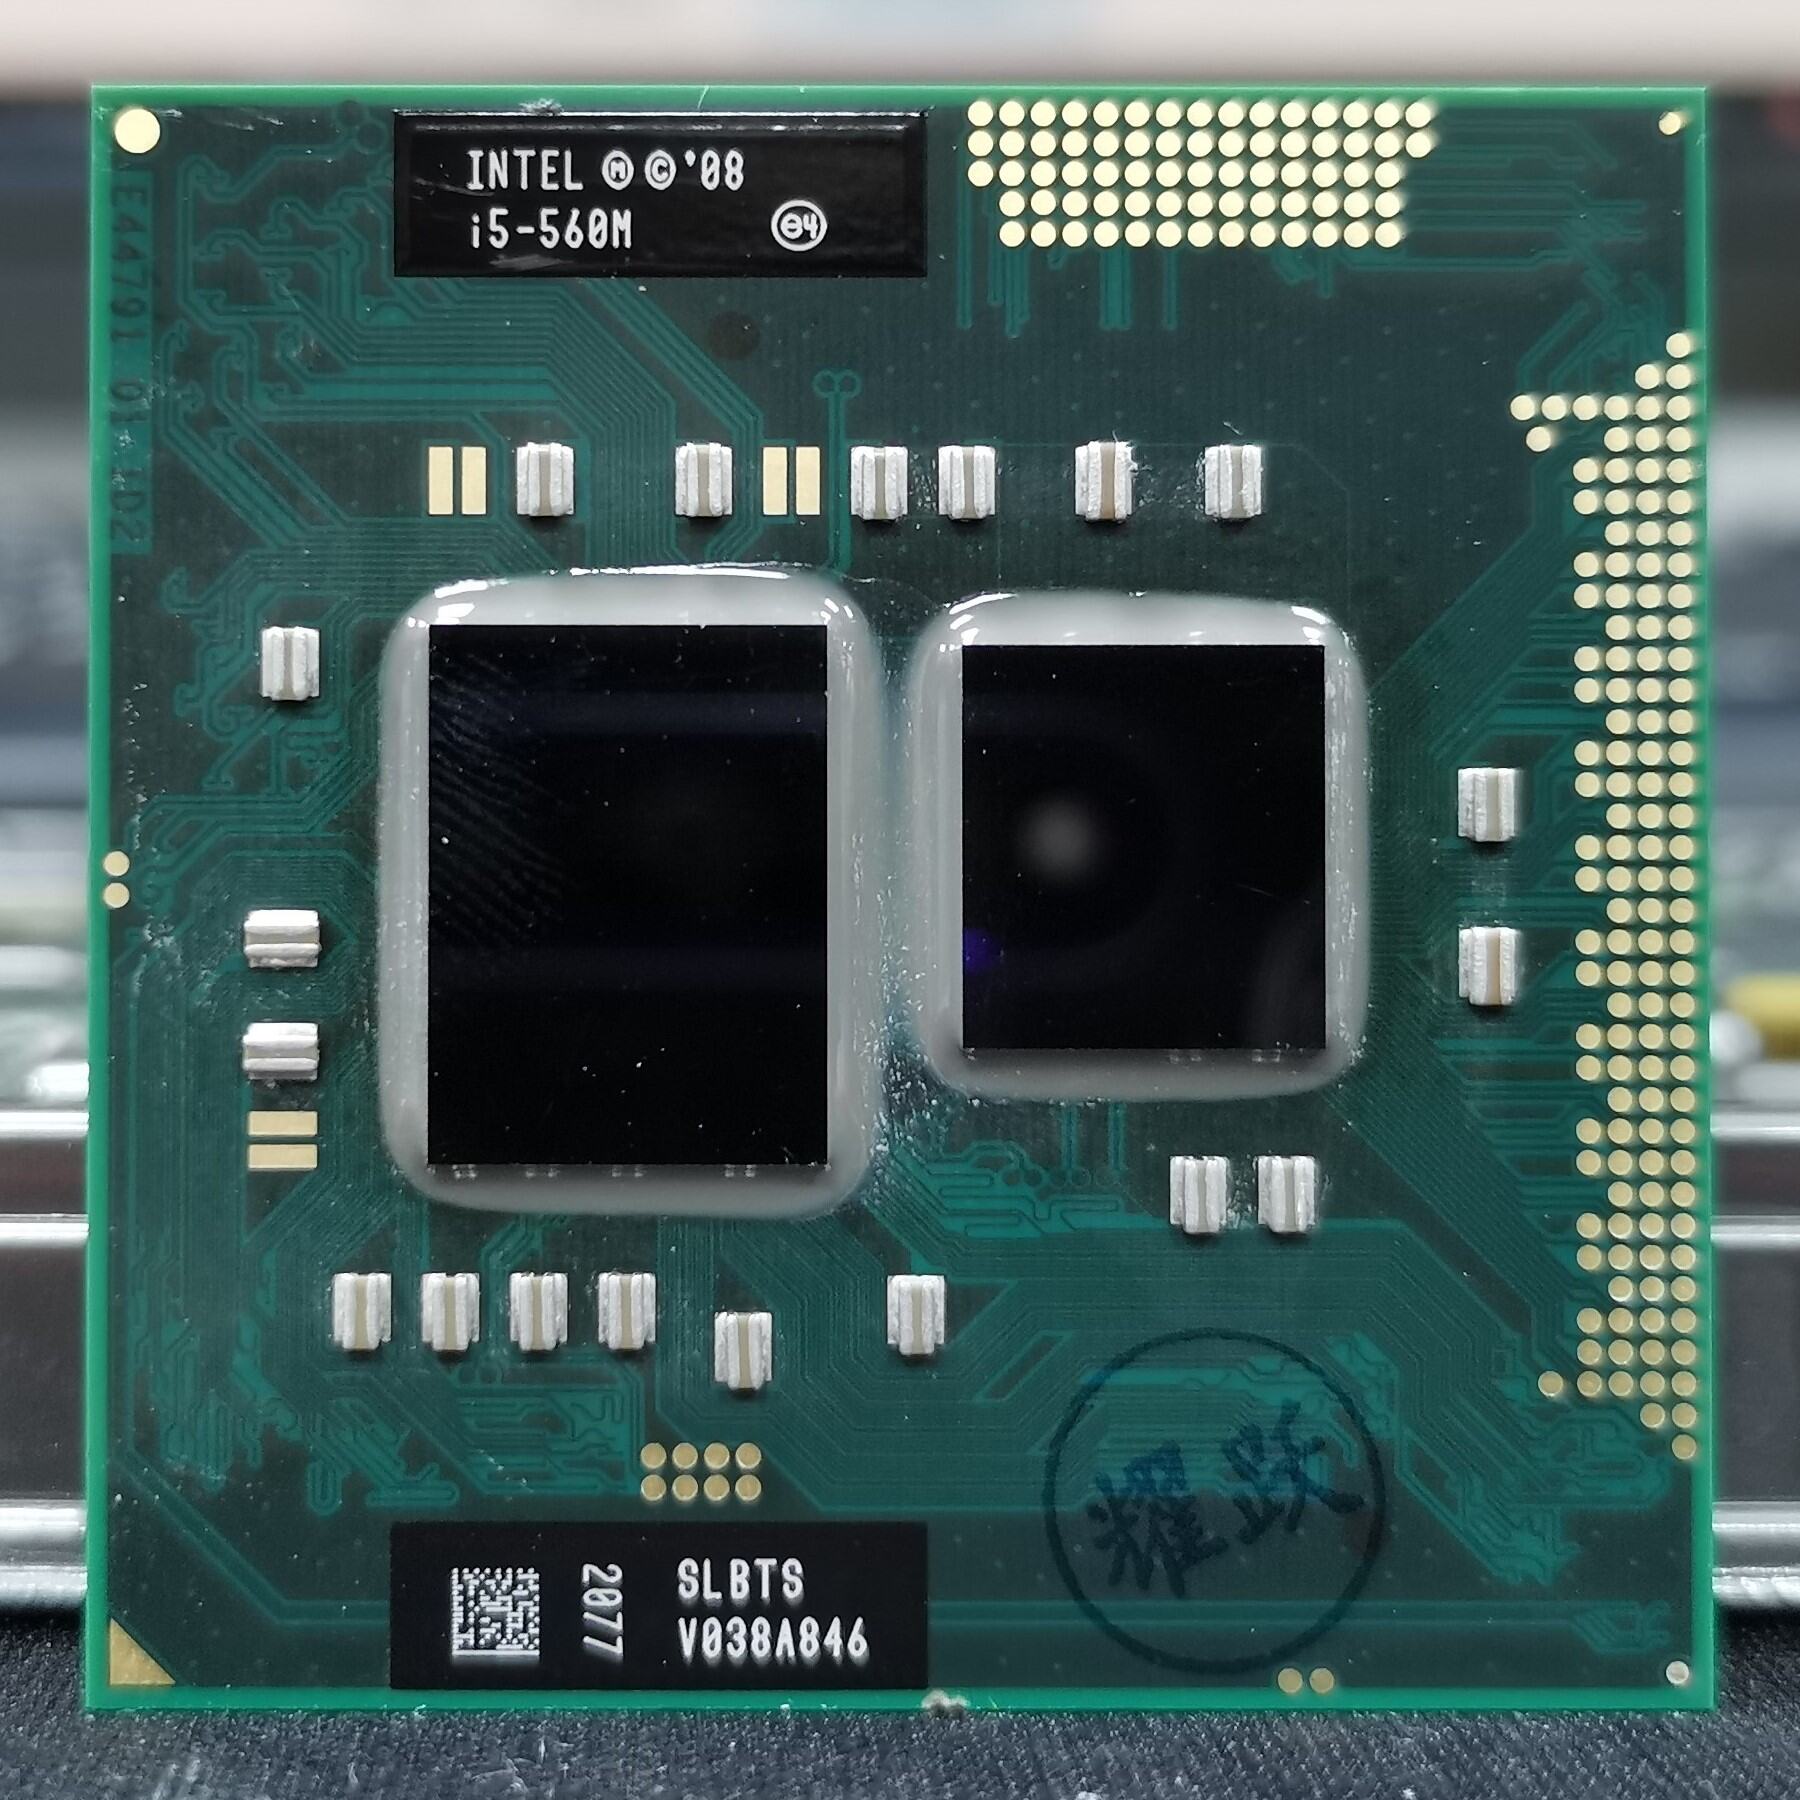 Intel I5 M Lõi Kép Bốn Luồng Gốc Pin Máy Tính Xách Tay Nâng Cấp CPU Chipset Hm55